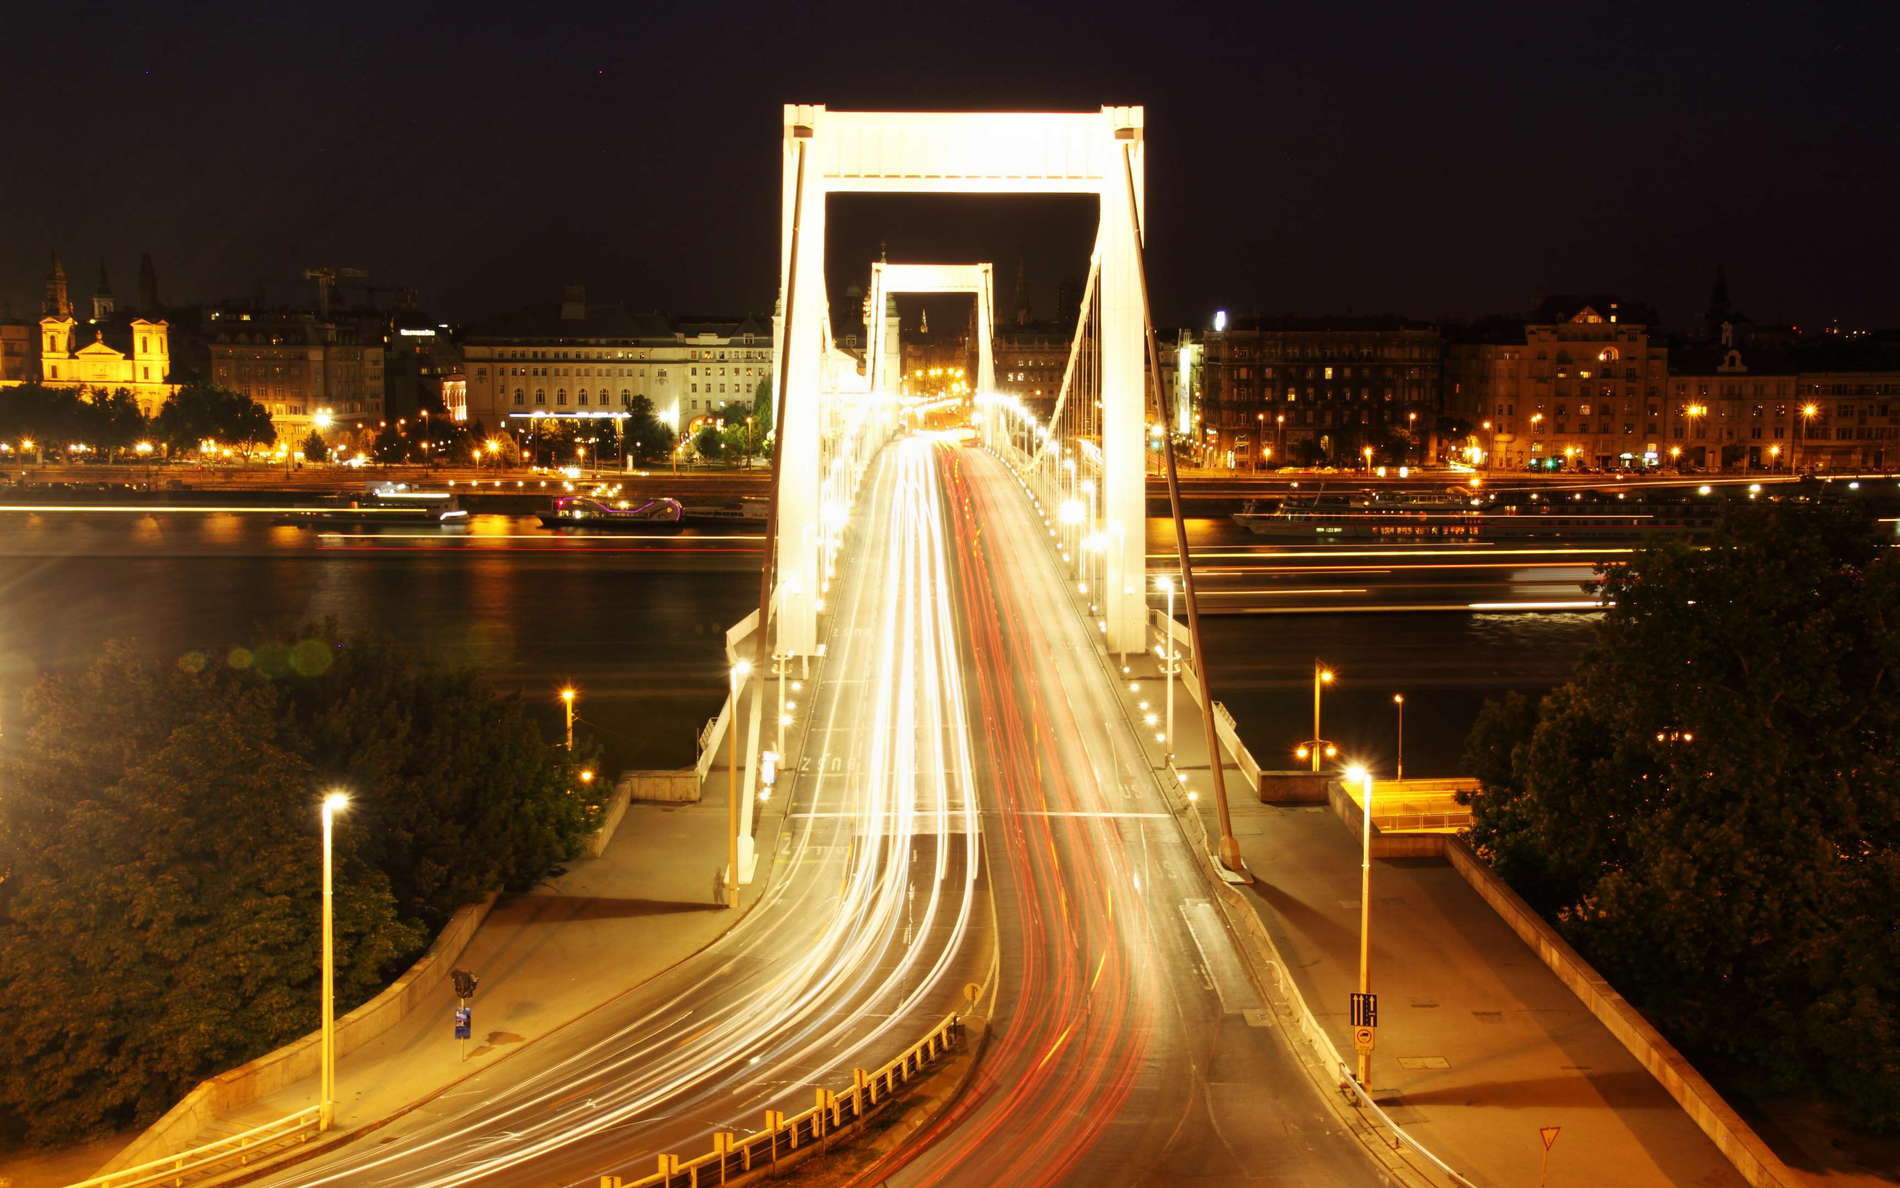 Budapest | Erzsébet híd at night